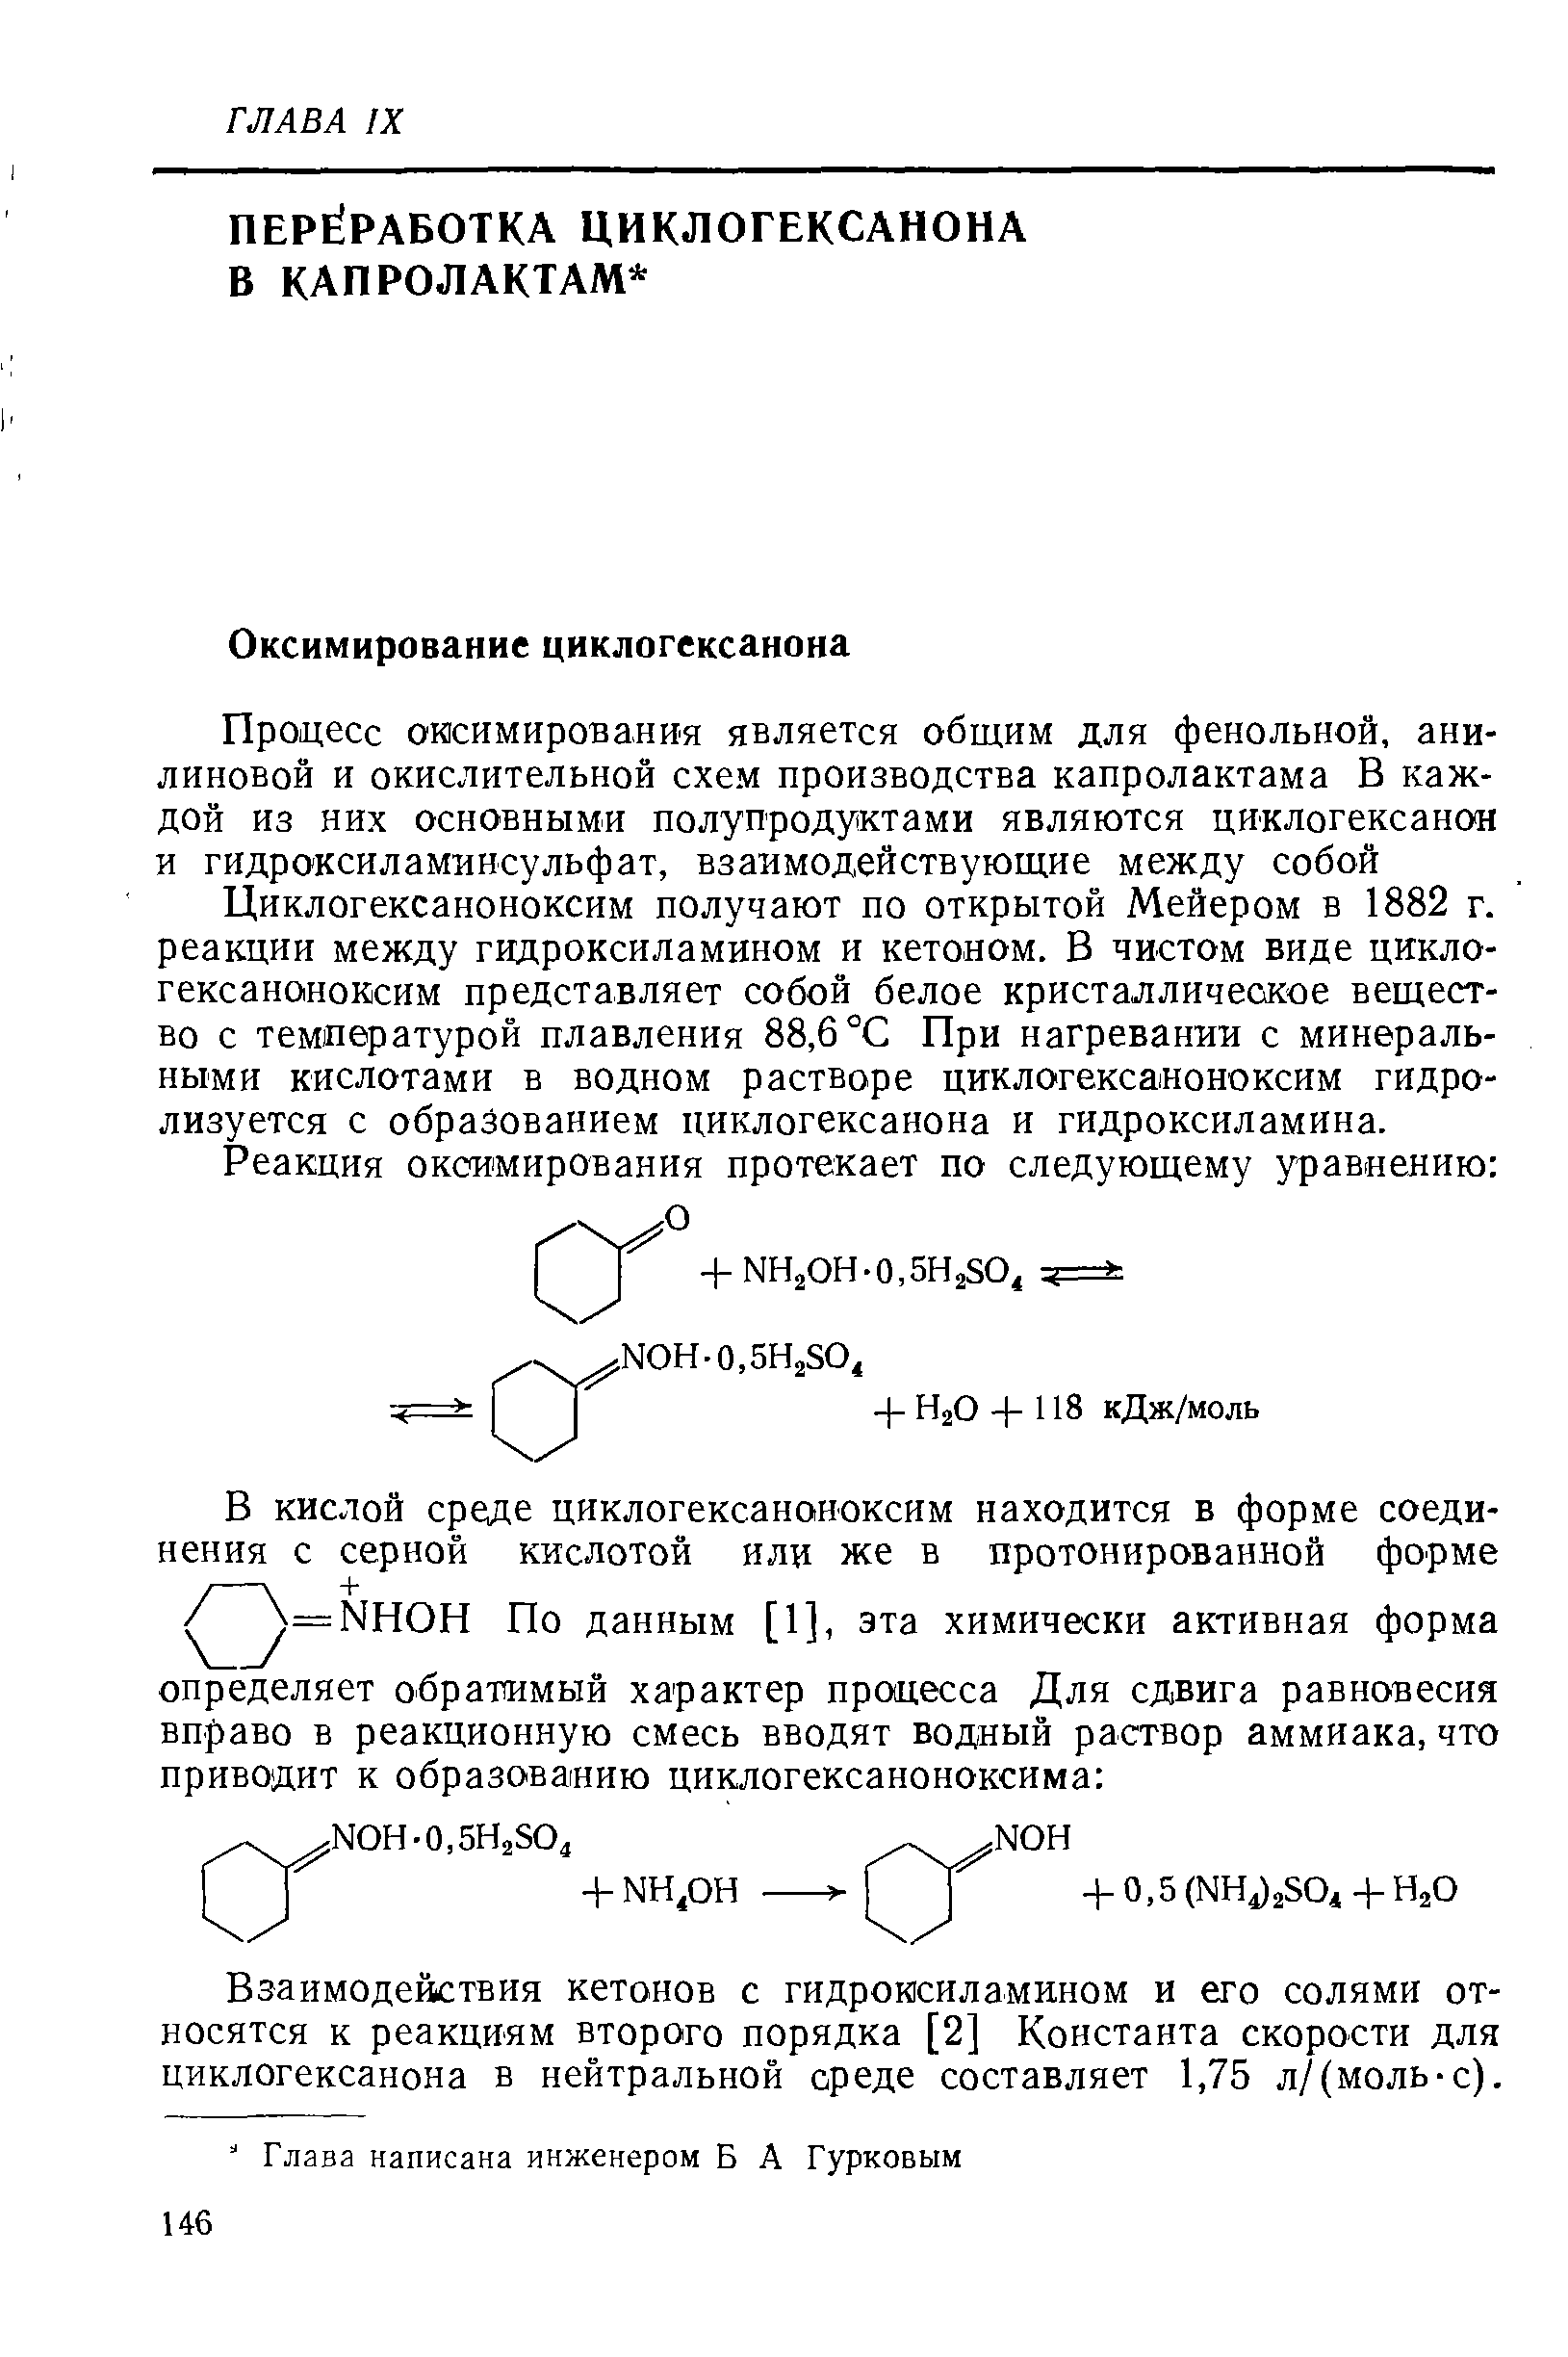 Циклогексаноноксим получают по открытой Мейером в 1882 г. реакции между гидроксиламином и кетоном. В чистом виде циклогексаноноксим представляет собой белое кристаллическое вещество с температурой плавления 88,6 °С При нагревании с минеральными кислотами в водном растворе циклогексаноноксим гидролизуется с образованием циклогексанона и гидроксиламина.